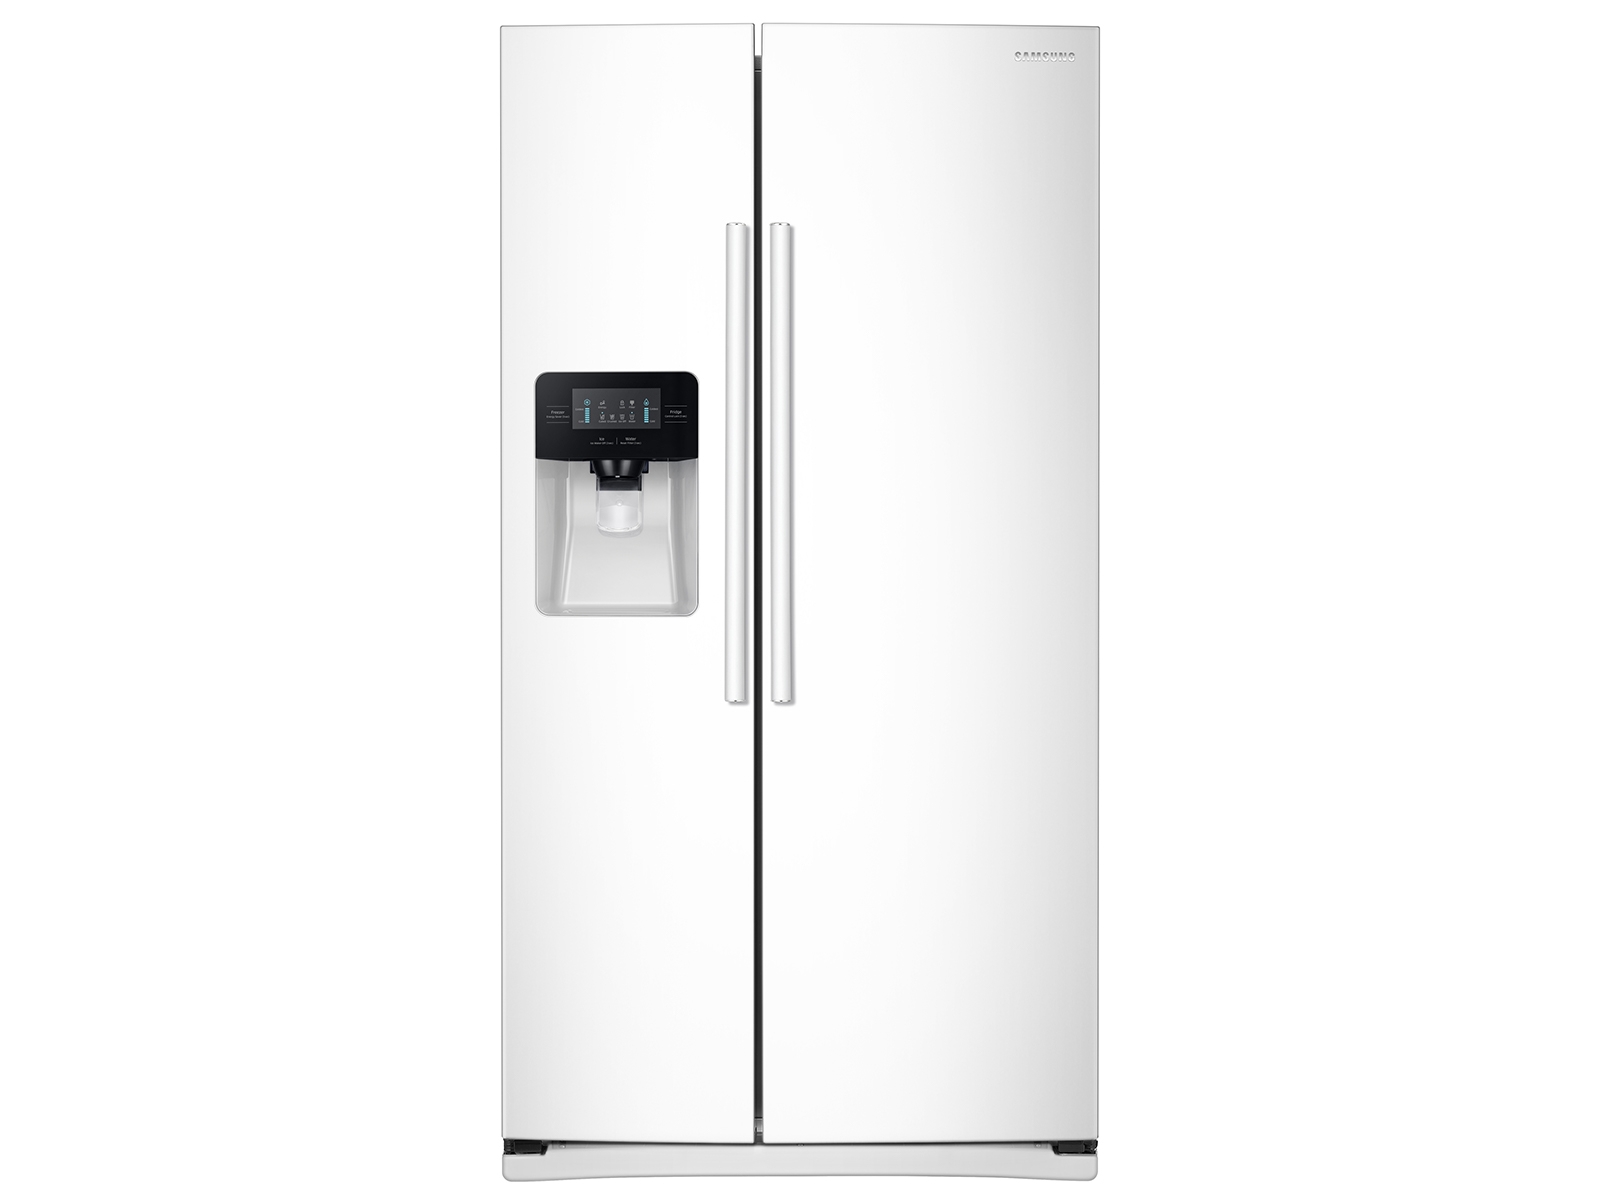 Labor Multitud Decir 25 cu. ft. Refrigerador lado-a-lado con iluminación LED en refrigerador  blanco - RS25J500DWW/AA | Samsung ES